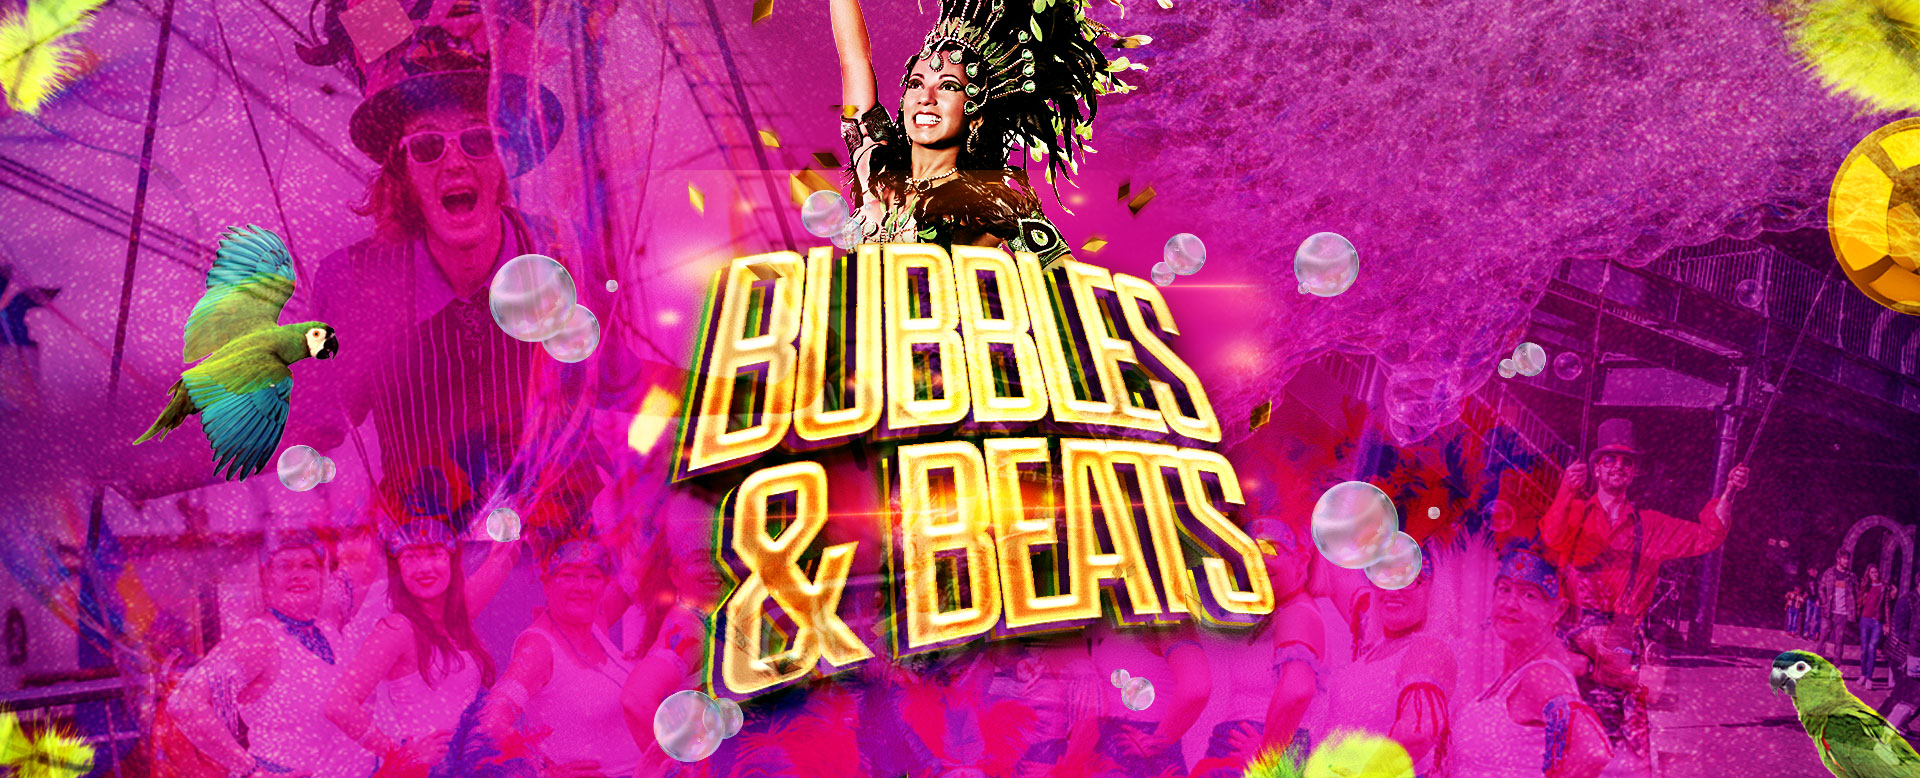 Bubbles & Beats